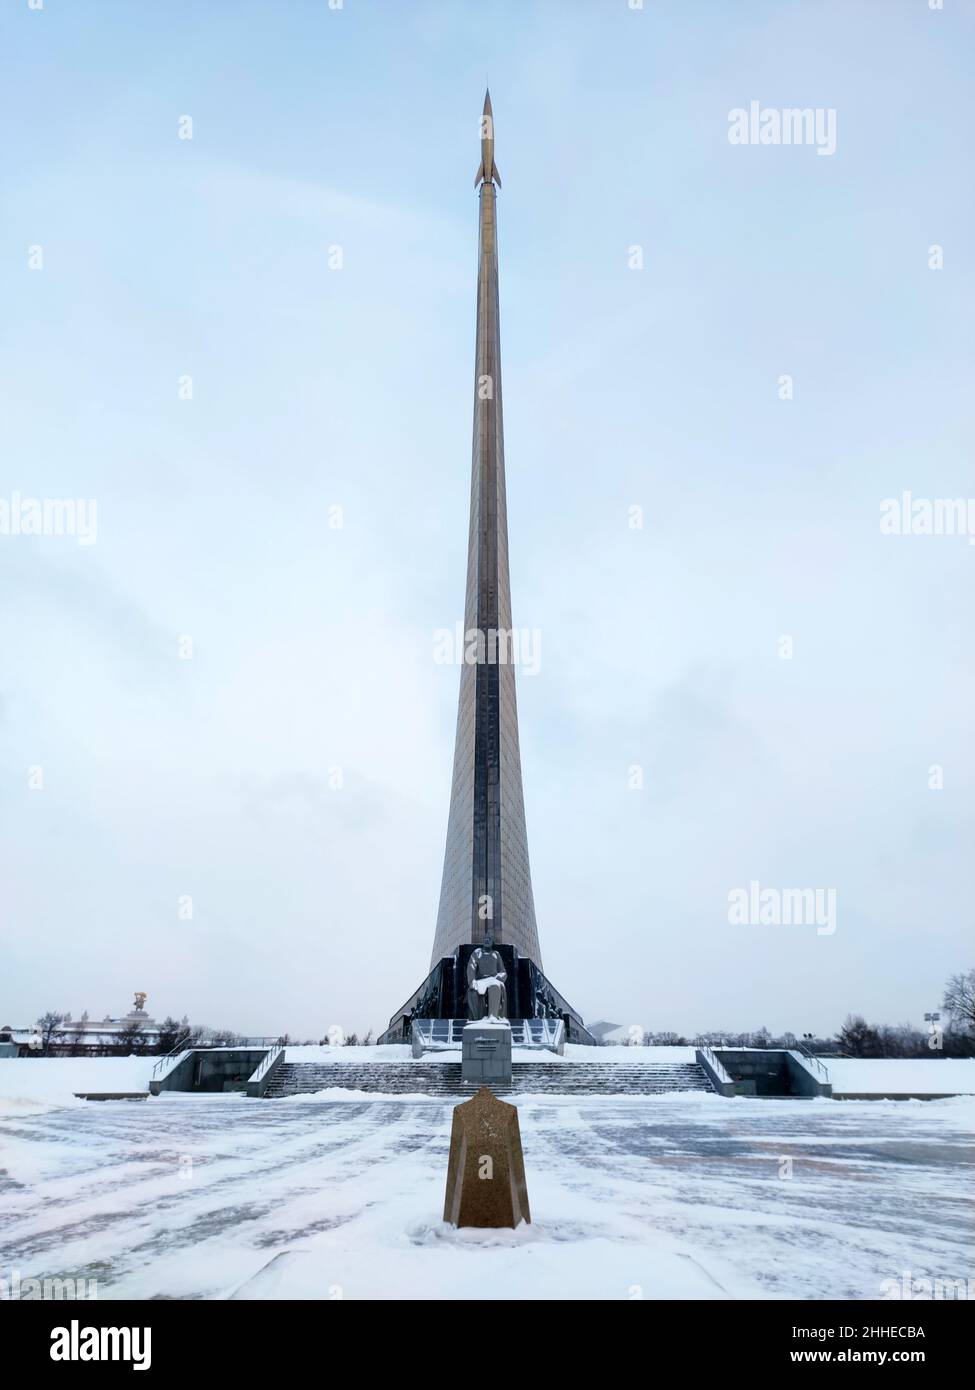 20 décembre 2021.Moscou.Russie: Monument aux conquérants de l'espace à Moscou.Monument au cosmonautics dans la capitale russe en hiver Banque D'Images